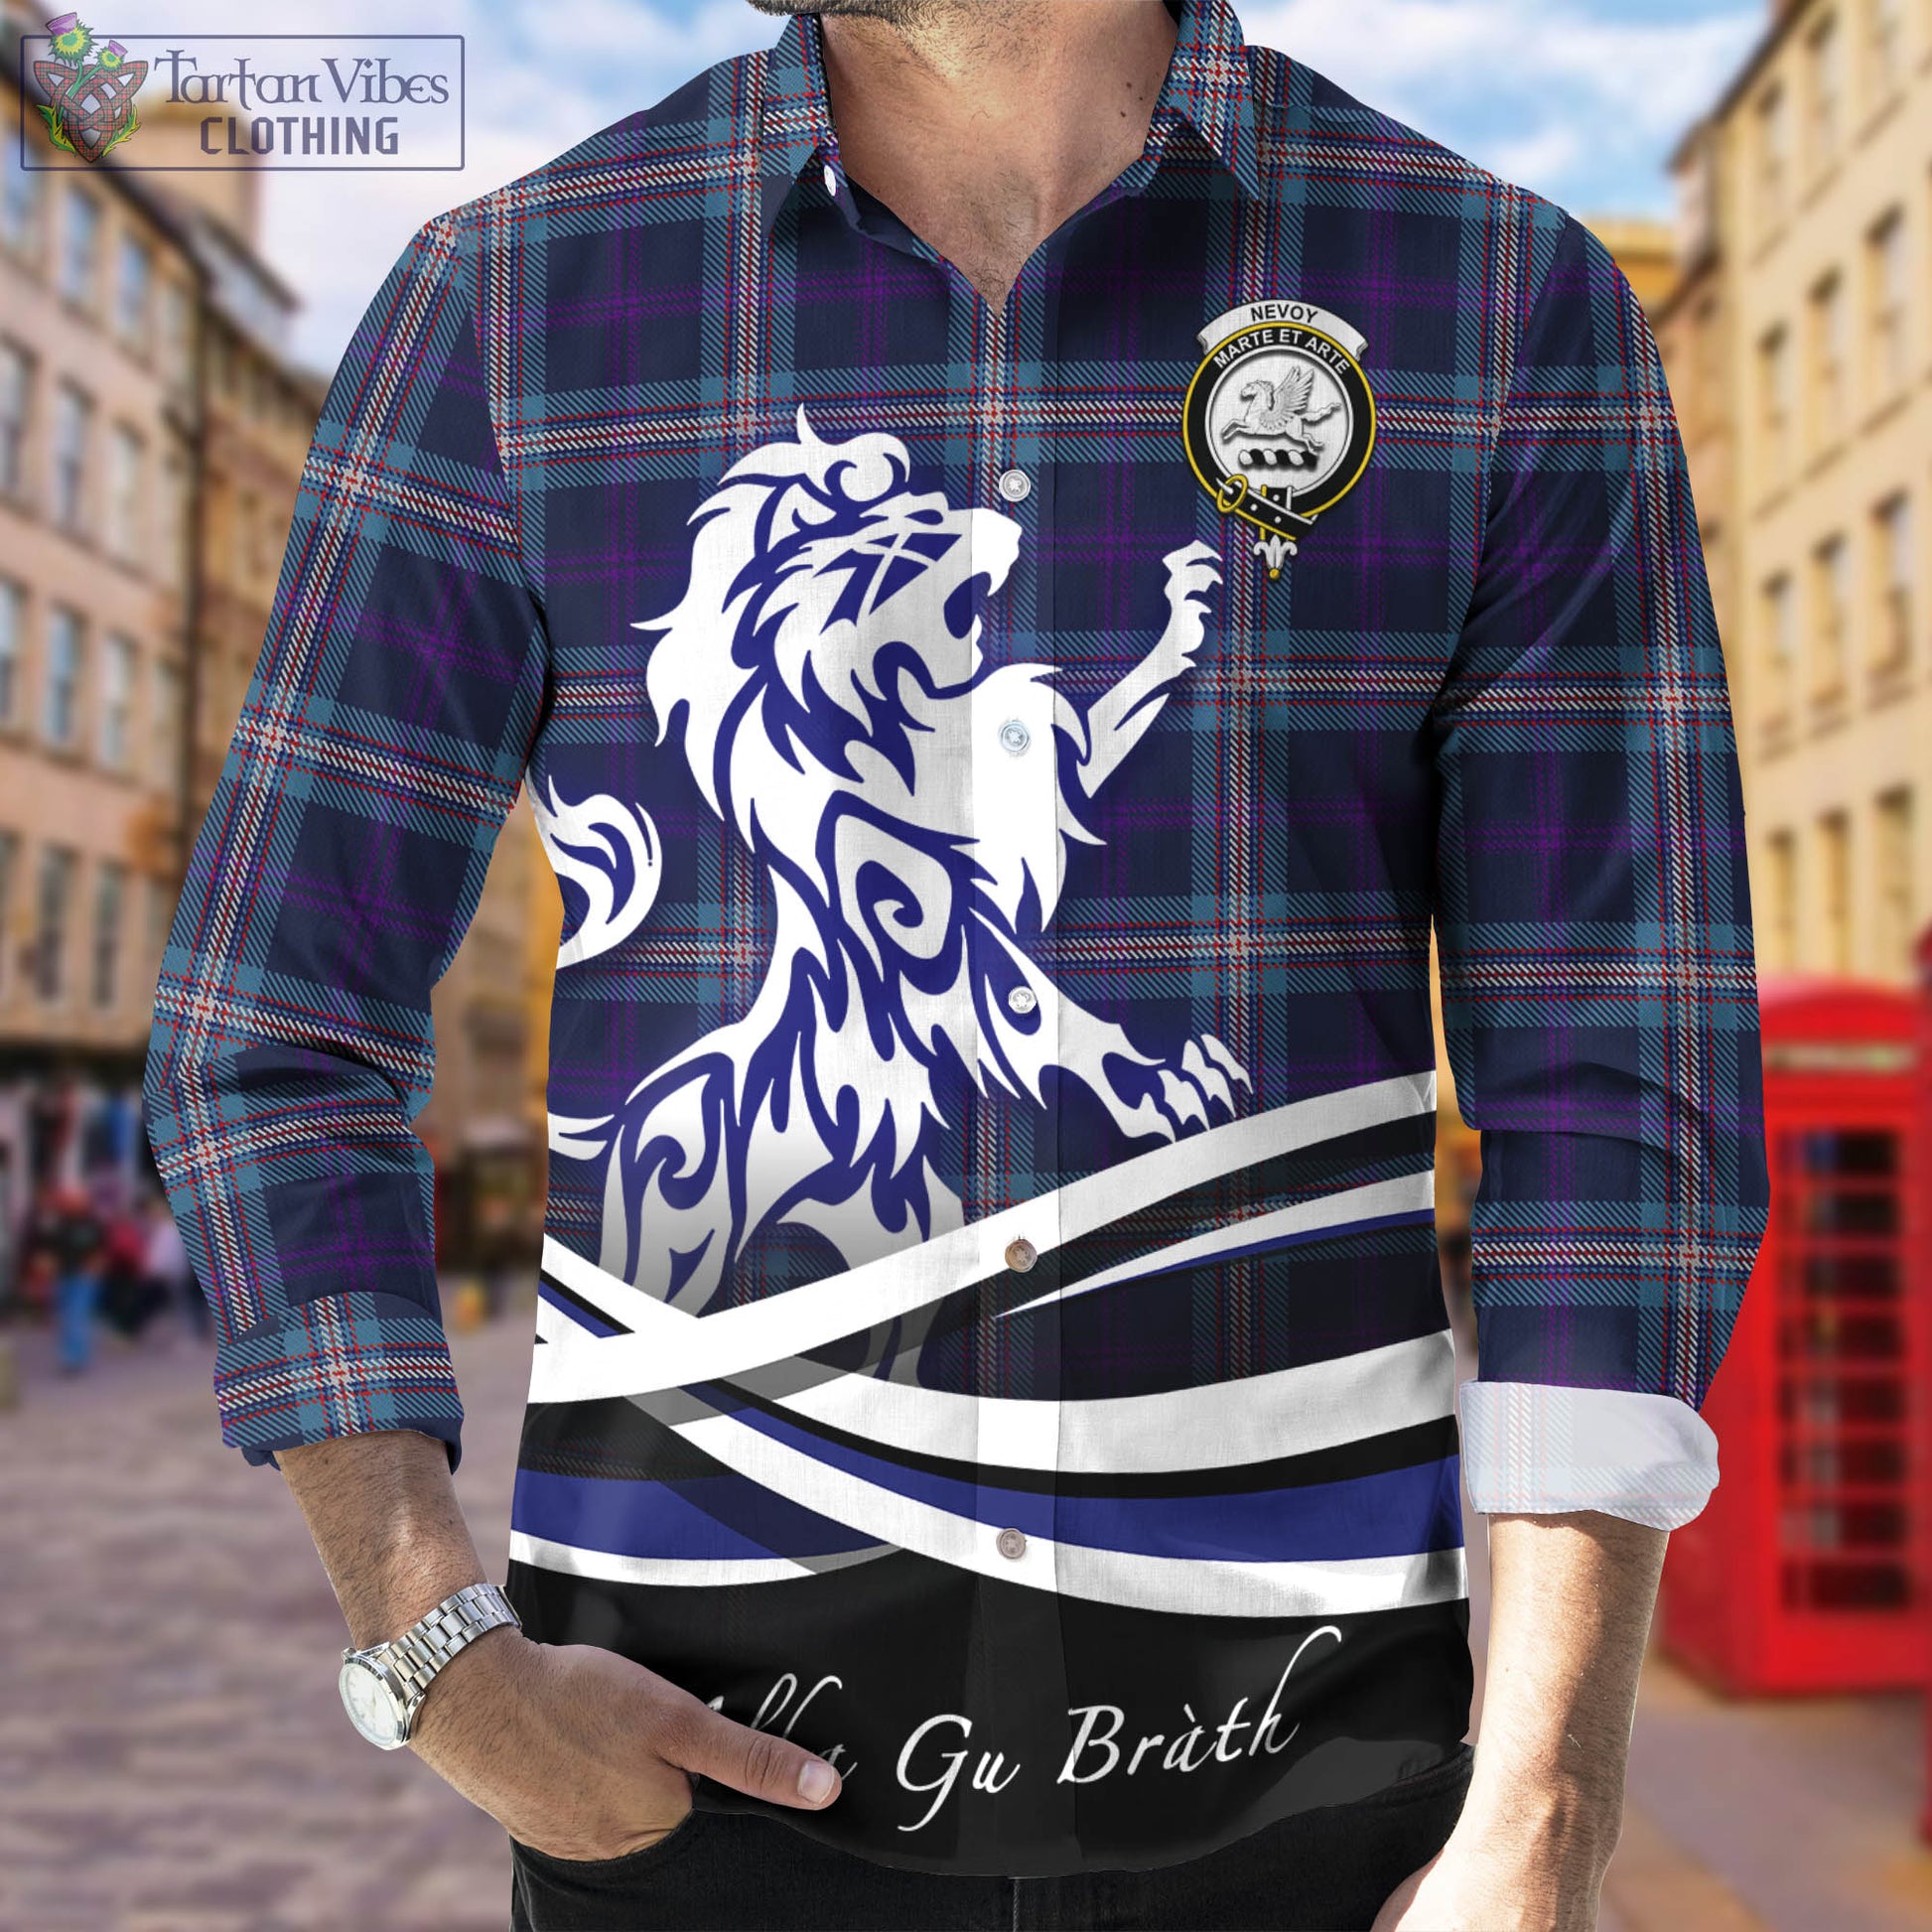 nevoy-tartan-long-sleeve-button-up-shirt-with-alba-gu-brath-regal-lion-emblem